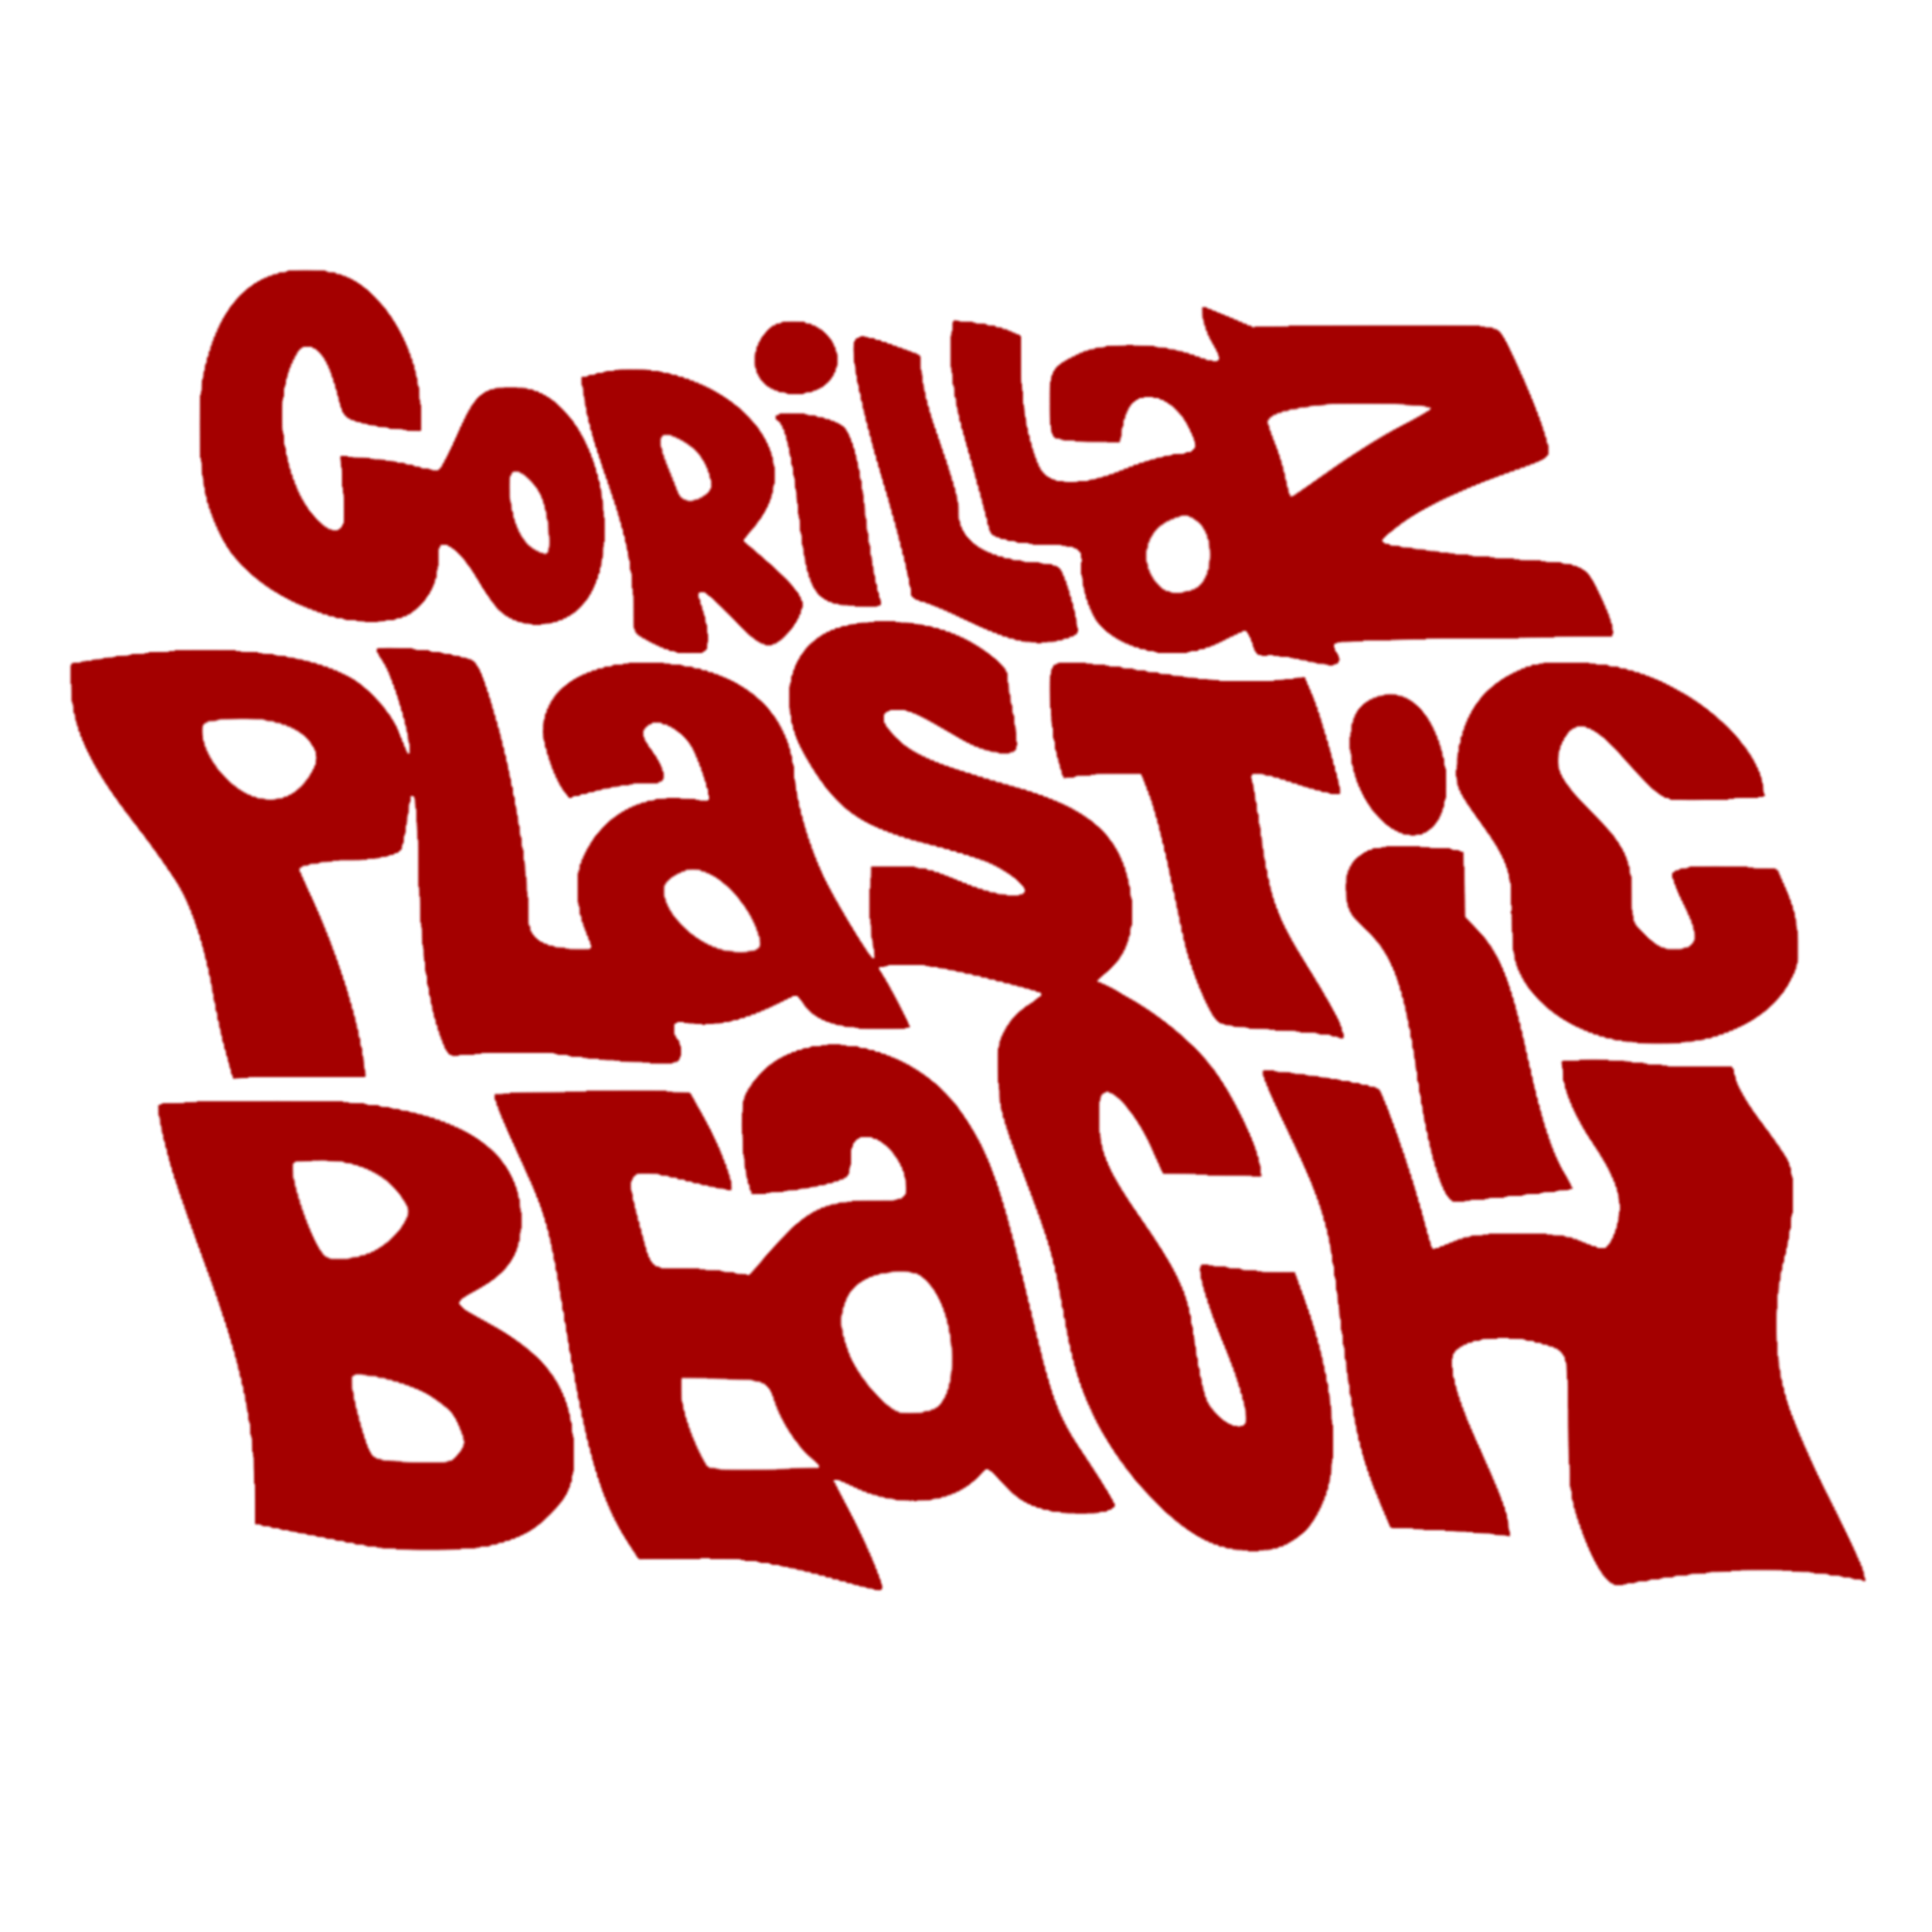 Plastic Beach Gorillaz Wiki FANDOM powered by Wikia